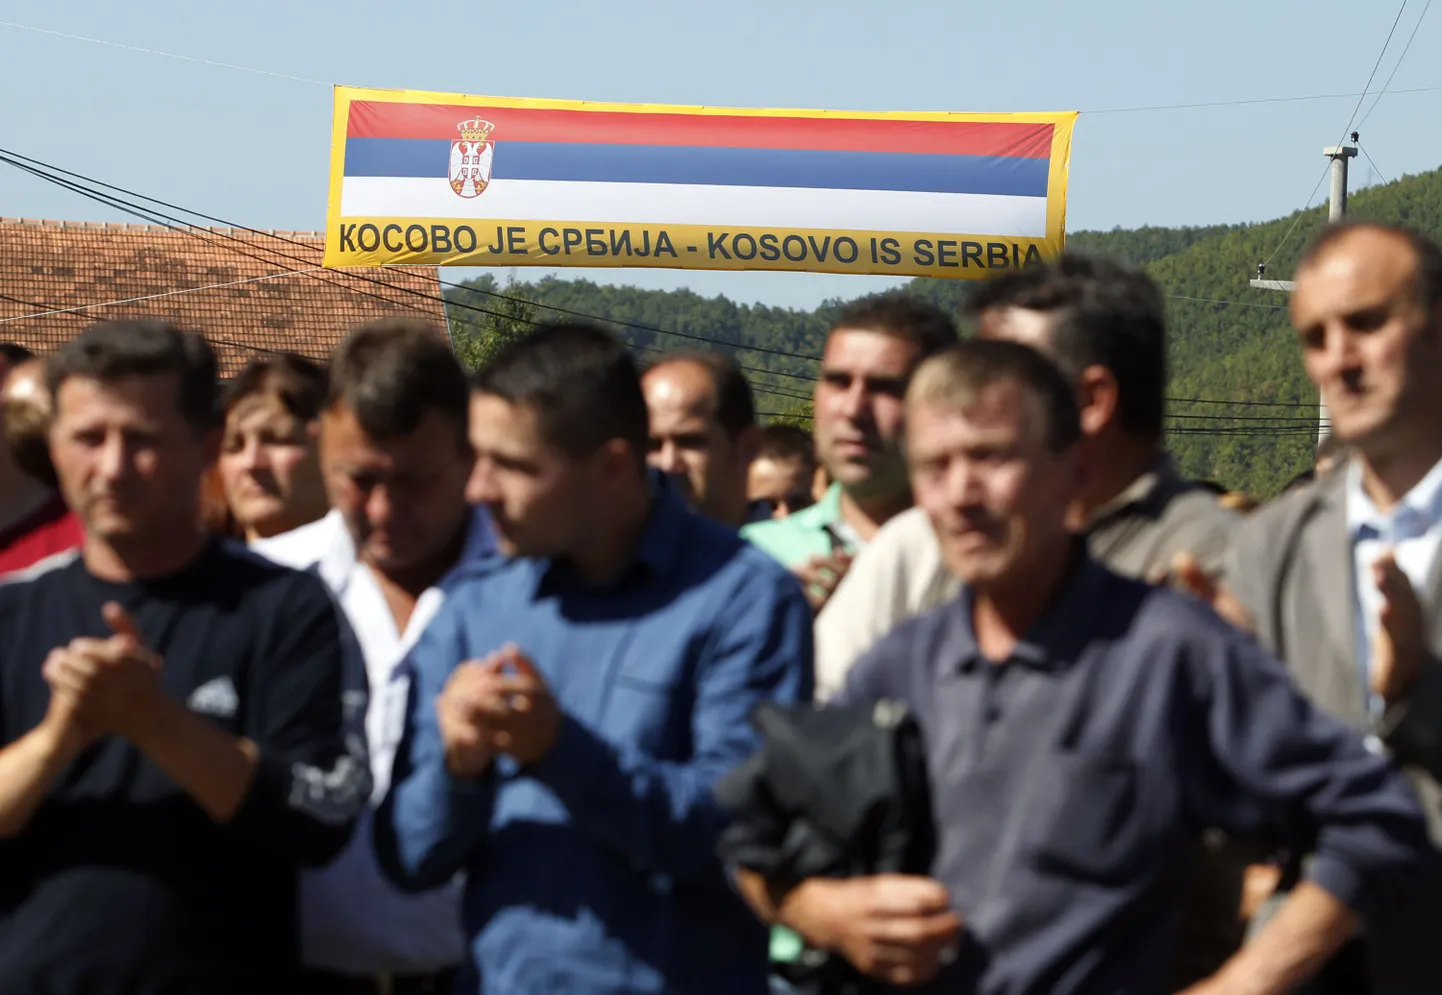 Сербы в Косово. На плакате надпись: "Косово - это Сербия"